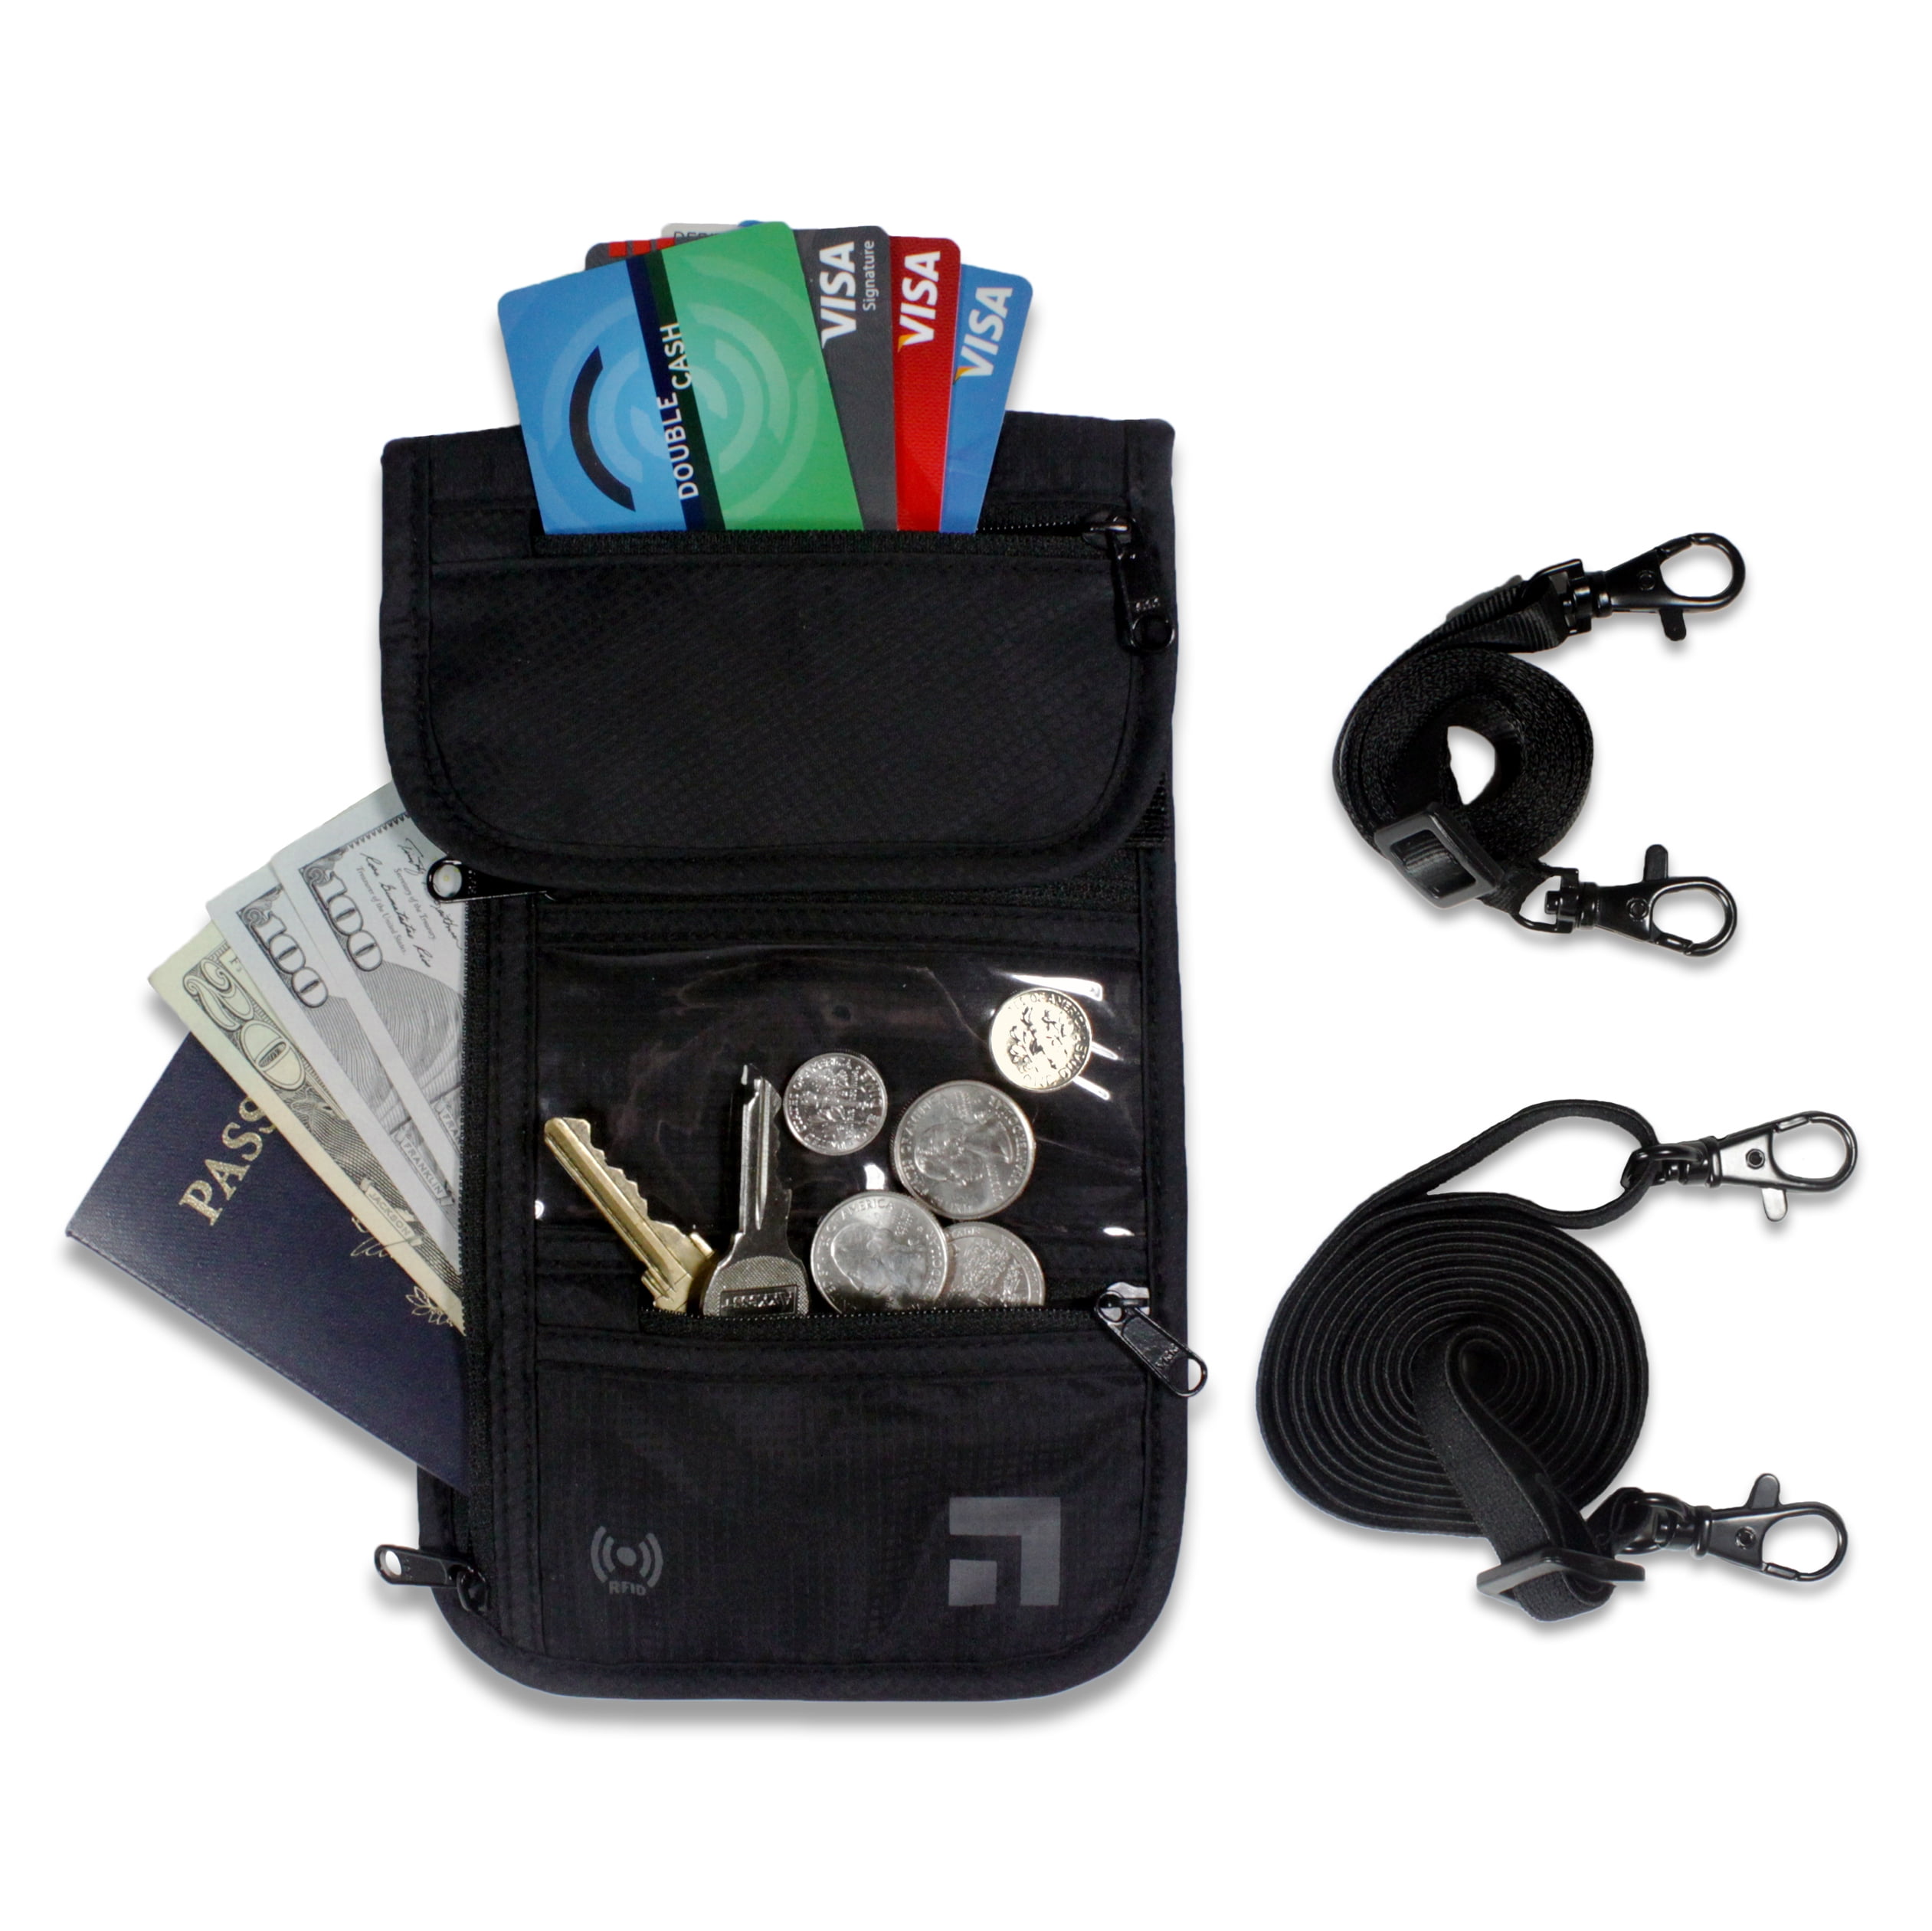 1 X RFID Travel Neck Pouch Passport Holder Premium Waterproof Neck 